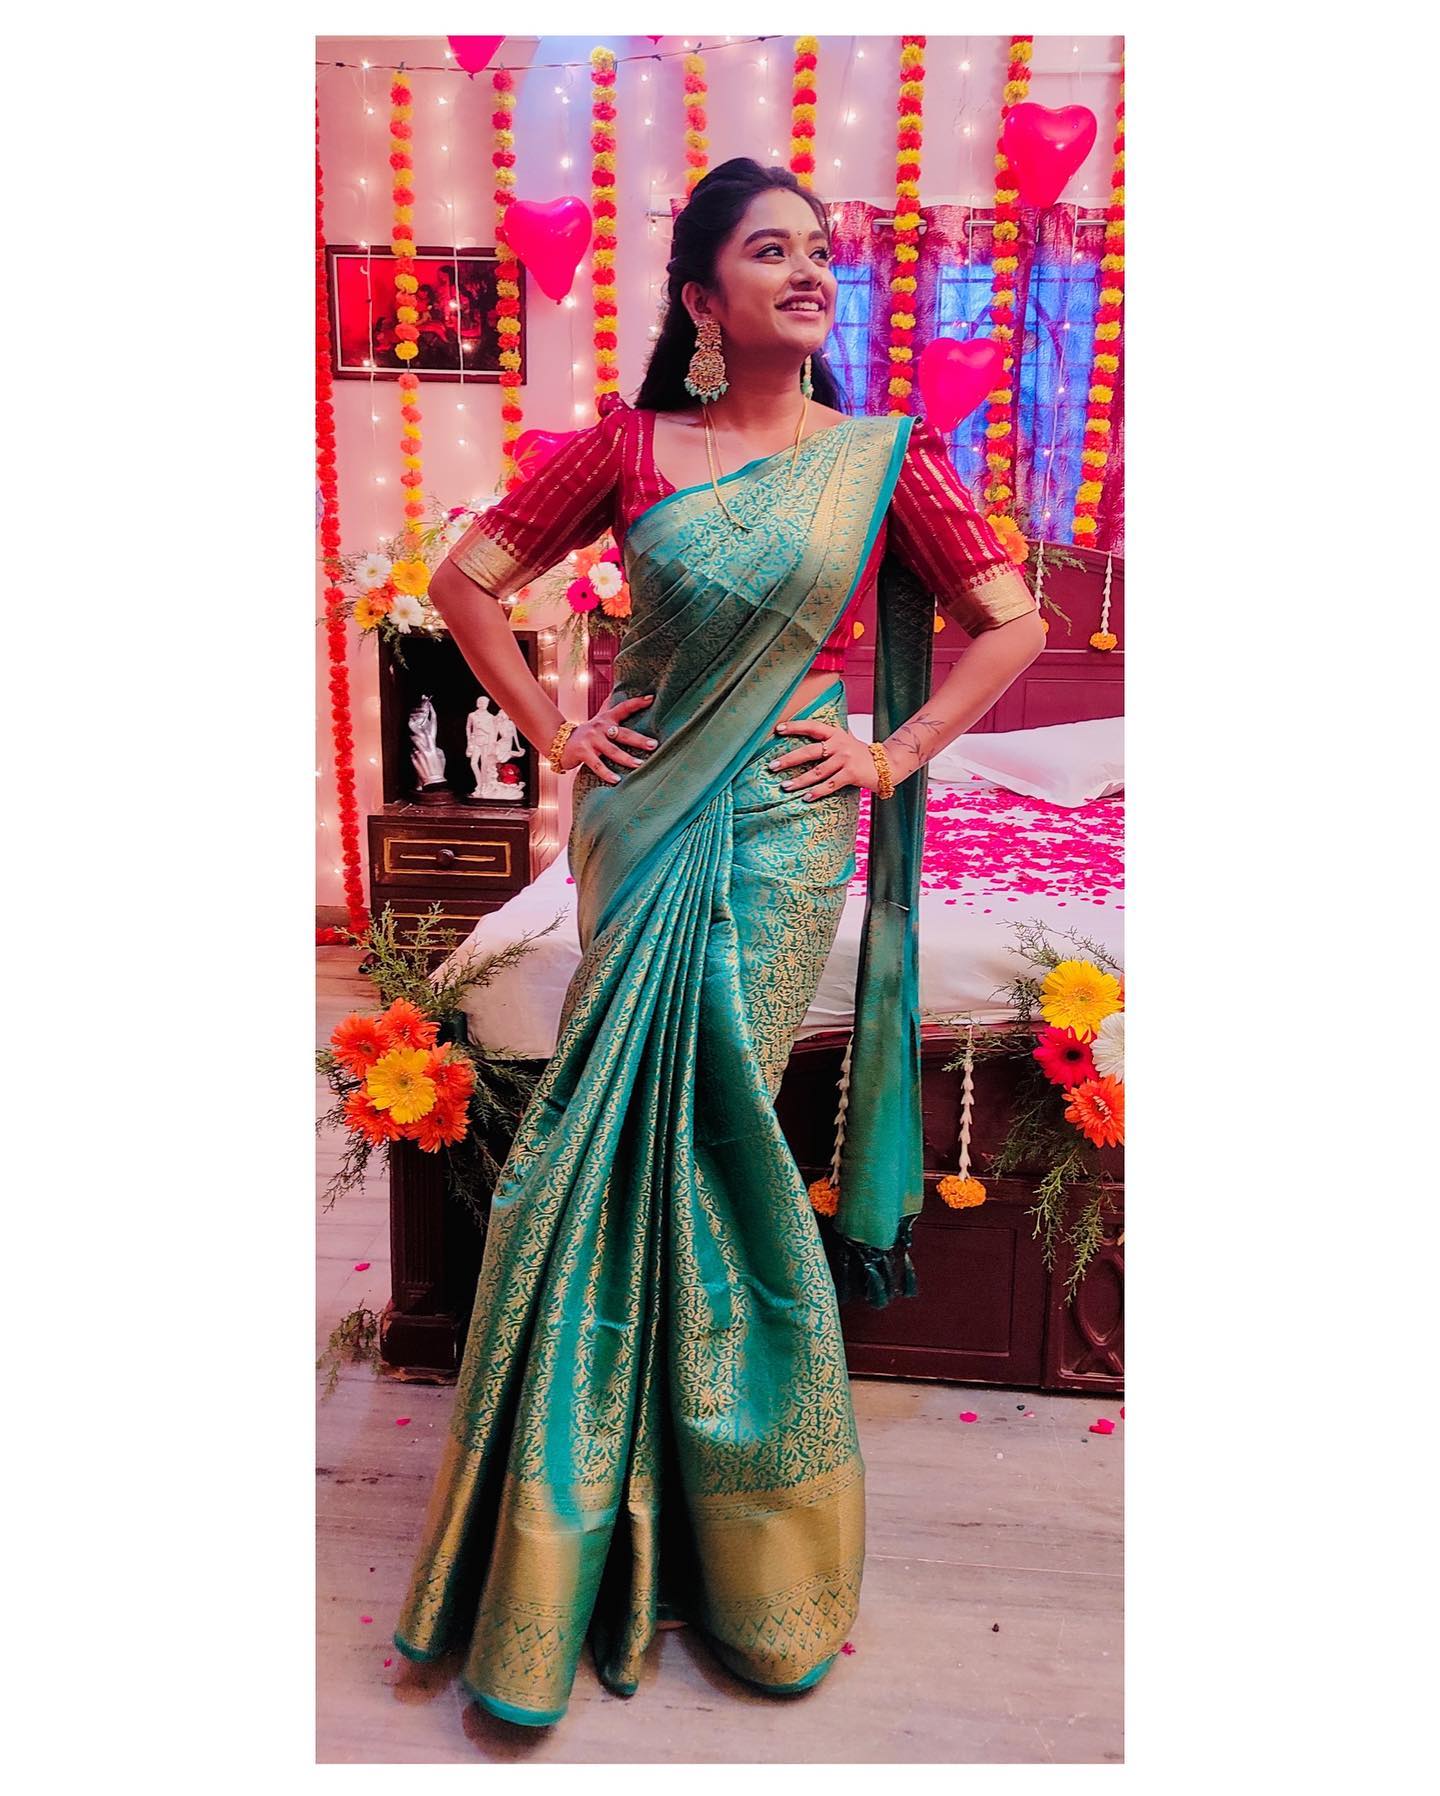  நடிகை ப்ரீத்தி ஷர்மா ( Image : Instagram @preethi__sharma__official)